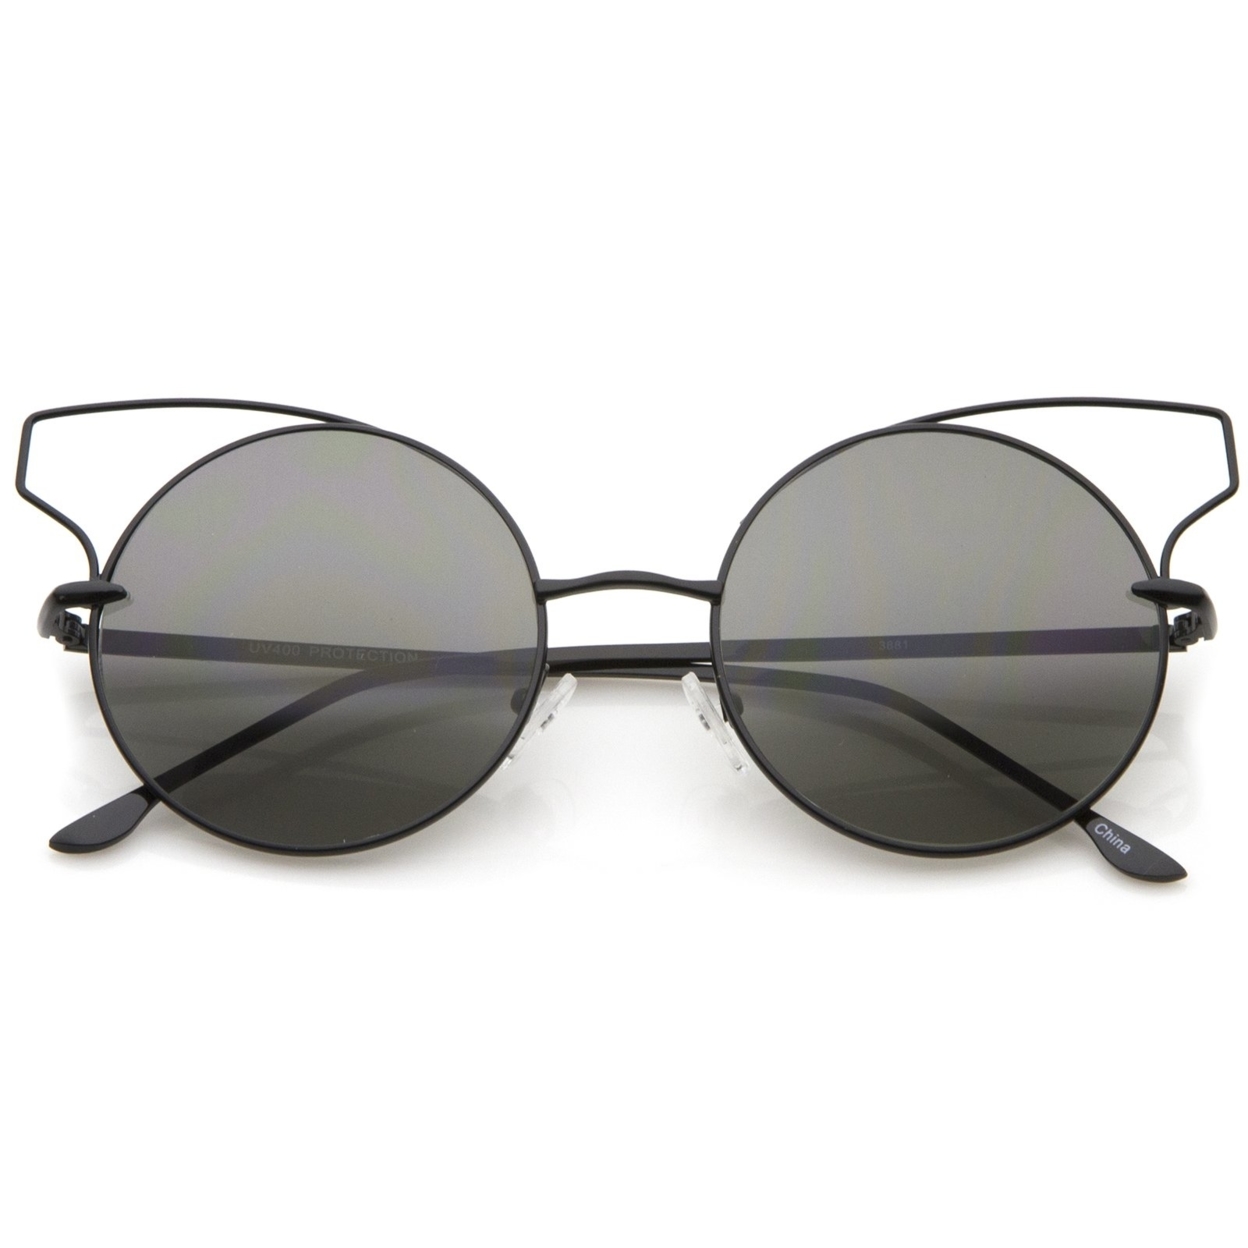 Women's Full Metal Open Design Frame Round Cat Eye Sunglasses 55mm - Black / Smoke